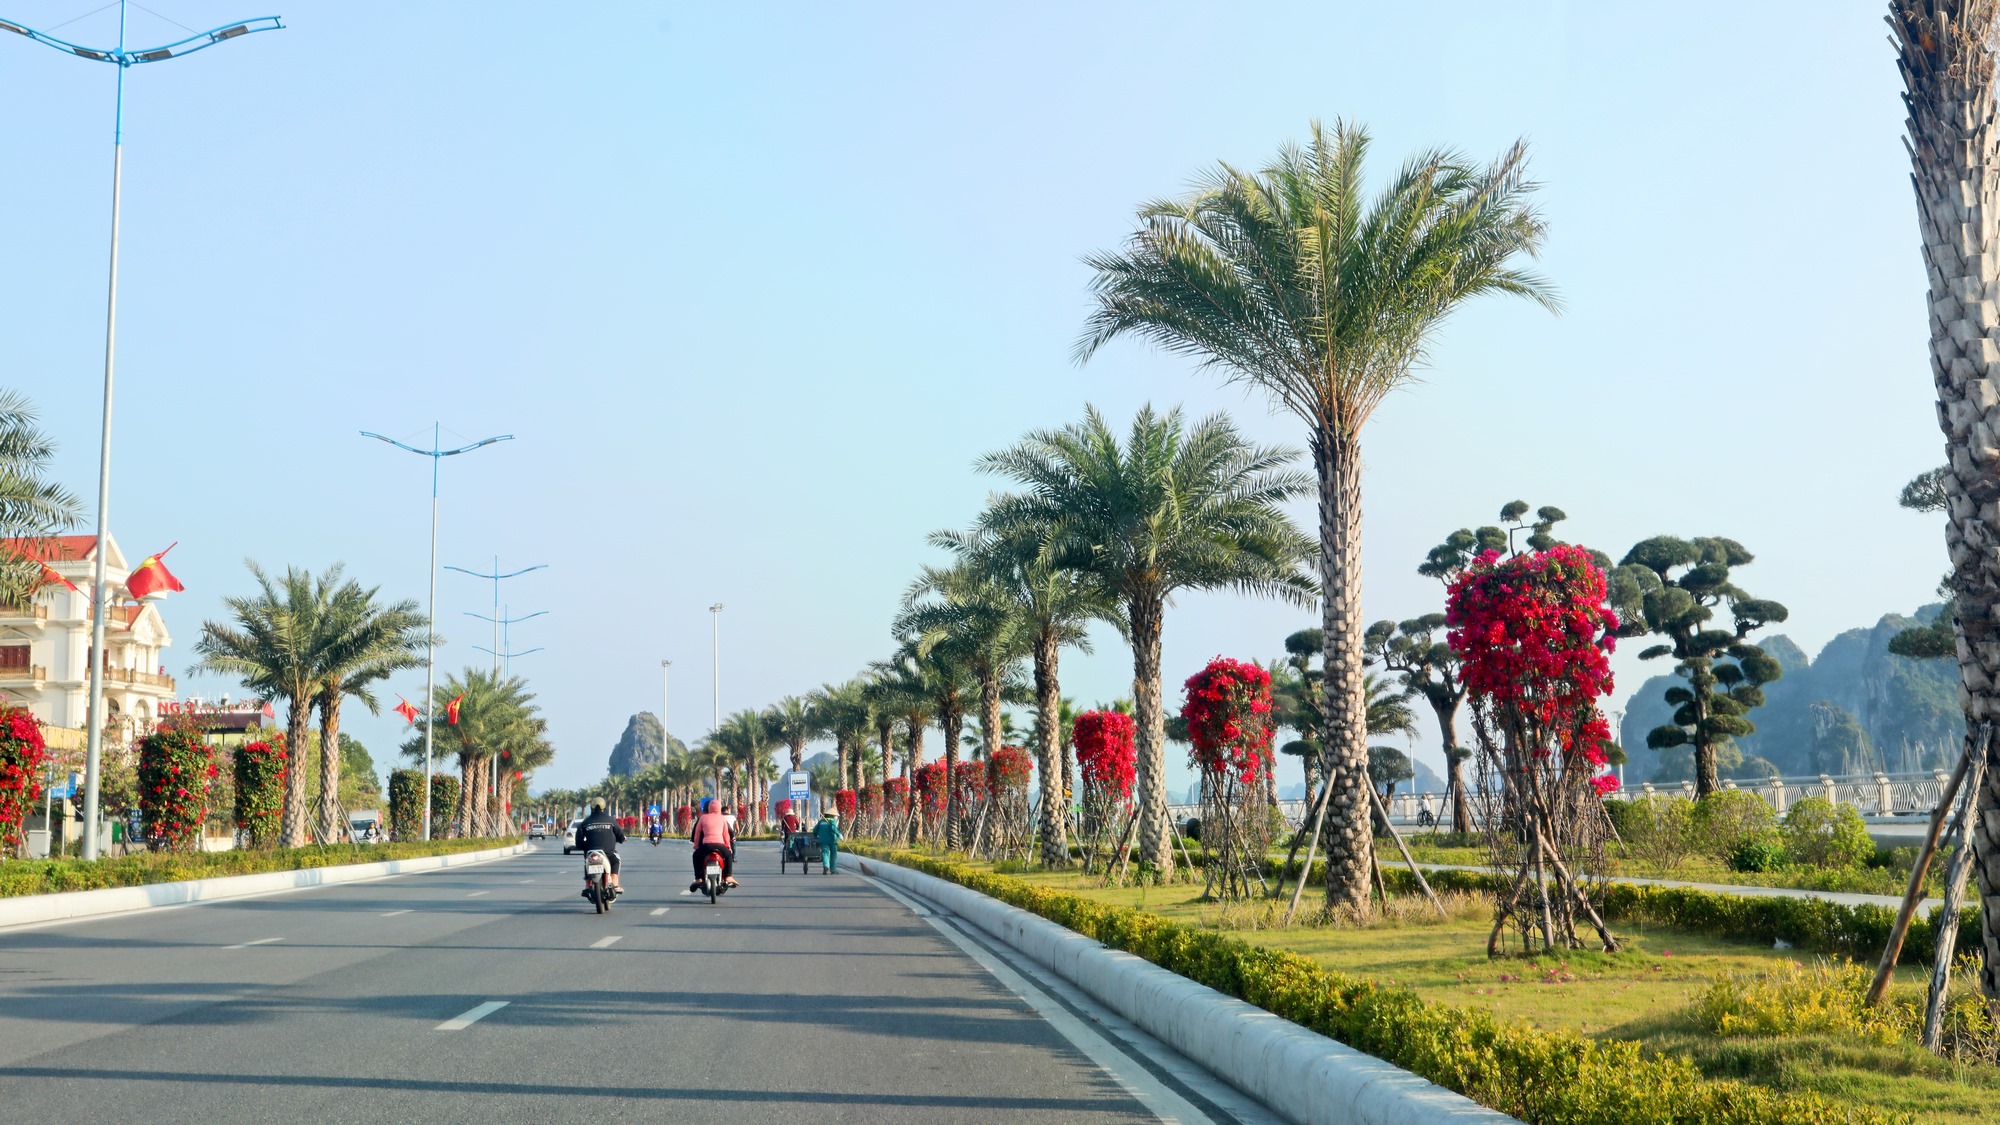 Tuyến đường bao biển Trần Quốc Nghiễn, vốn được mệnh danh là con đường đẹp nhất thành phố, nay càng thêm lộng lẫy với những sắc màu rực rỡ của các loài hoa.